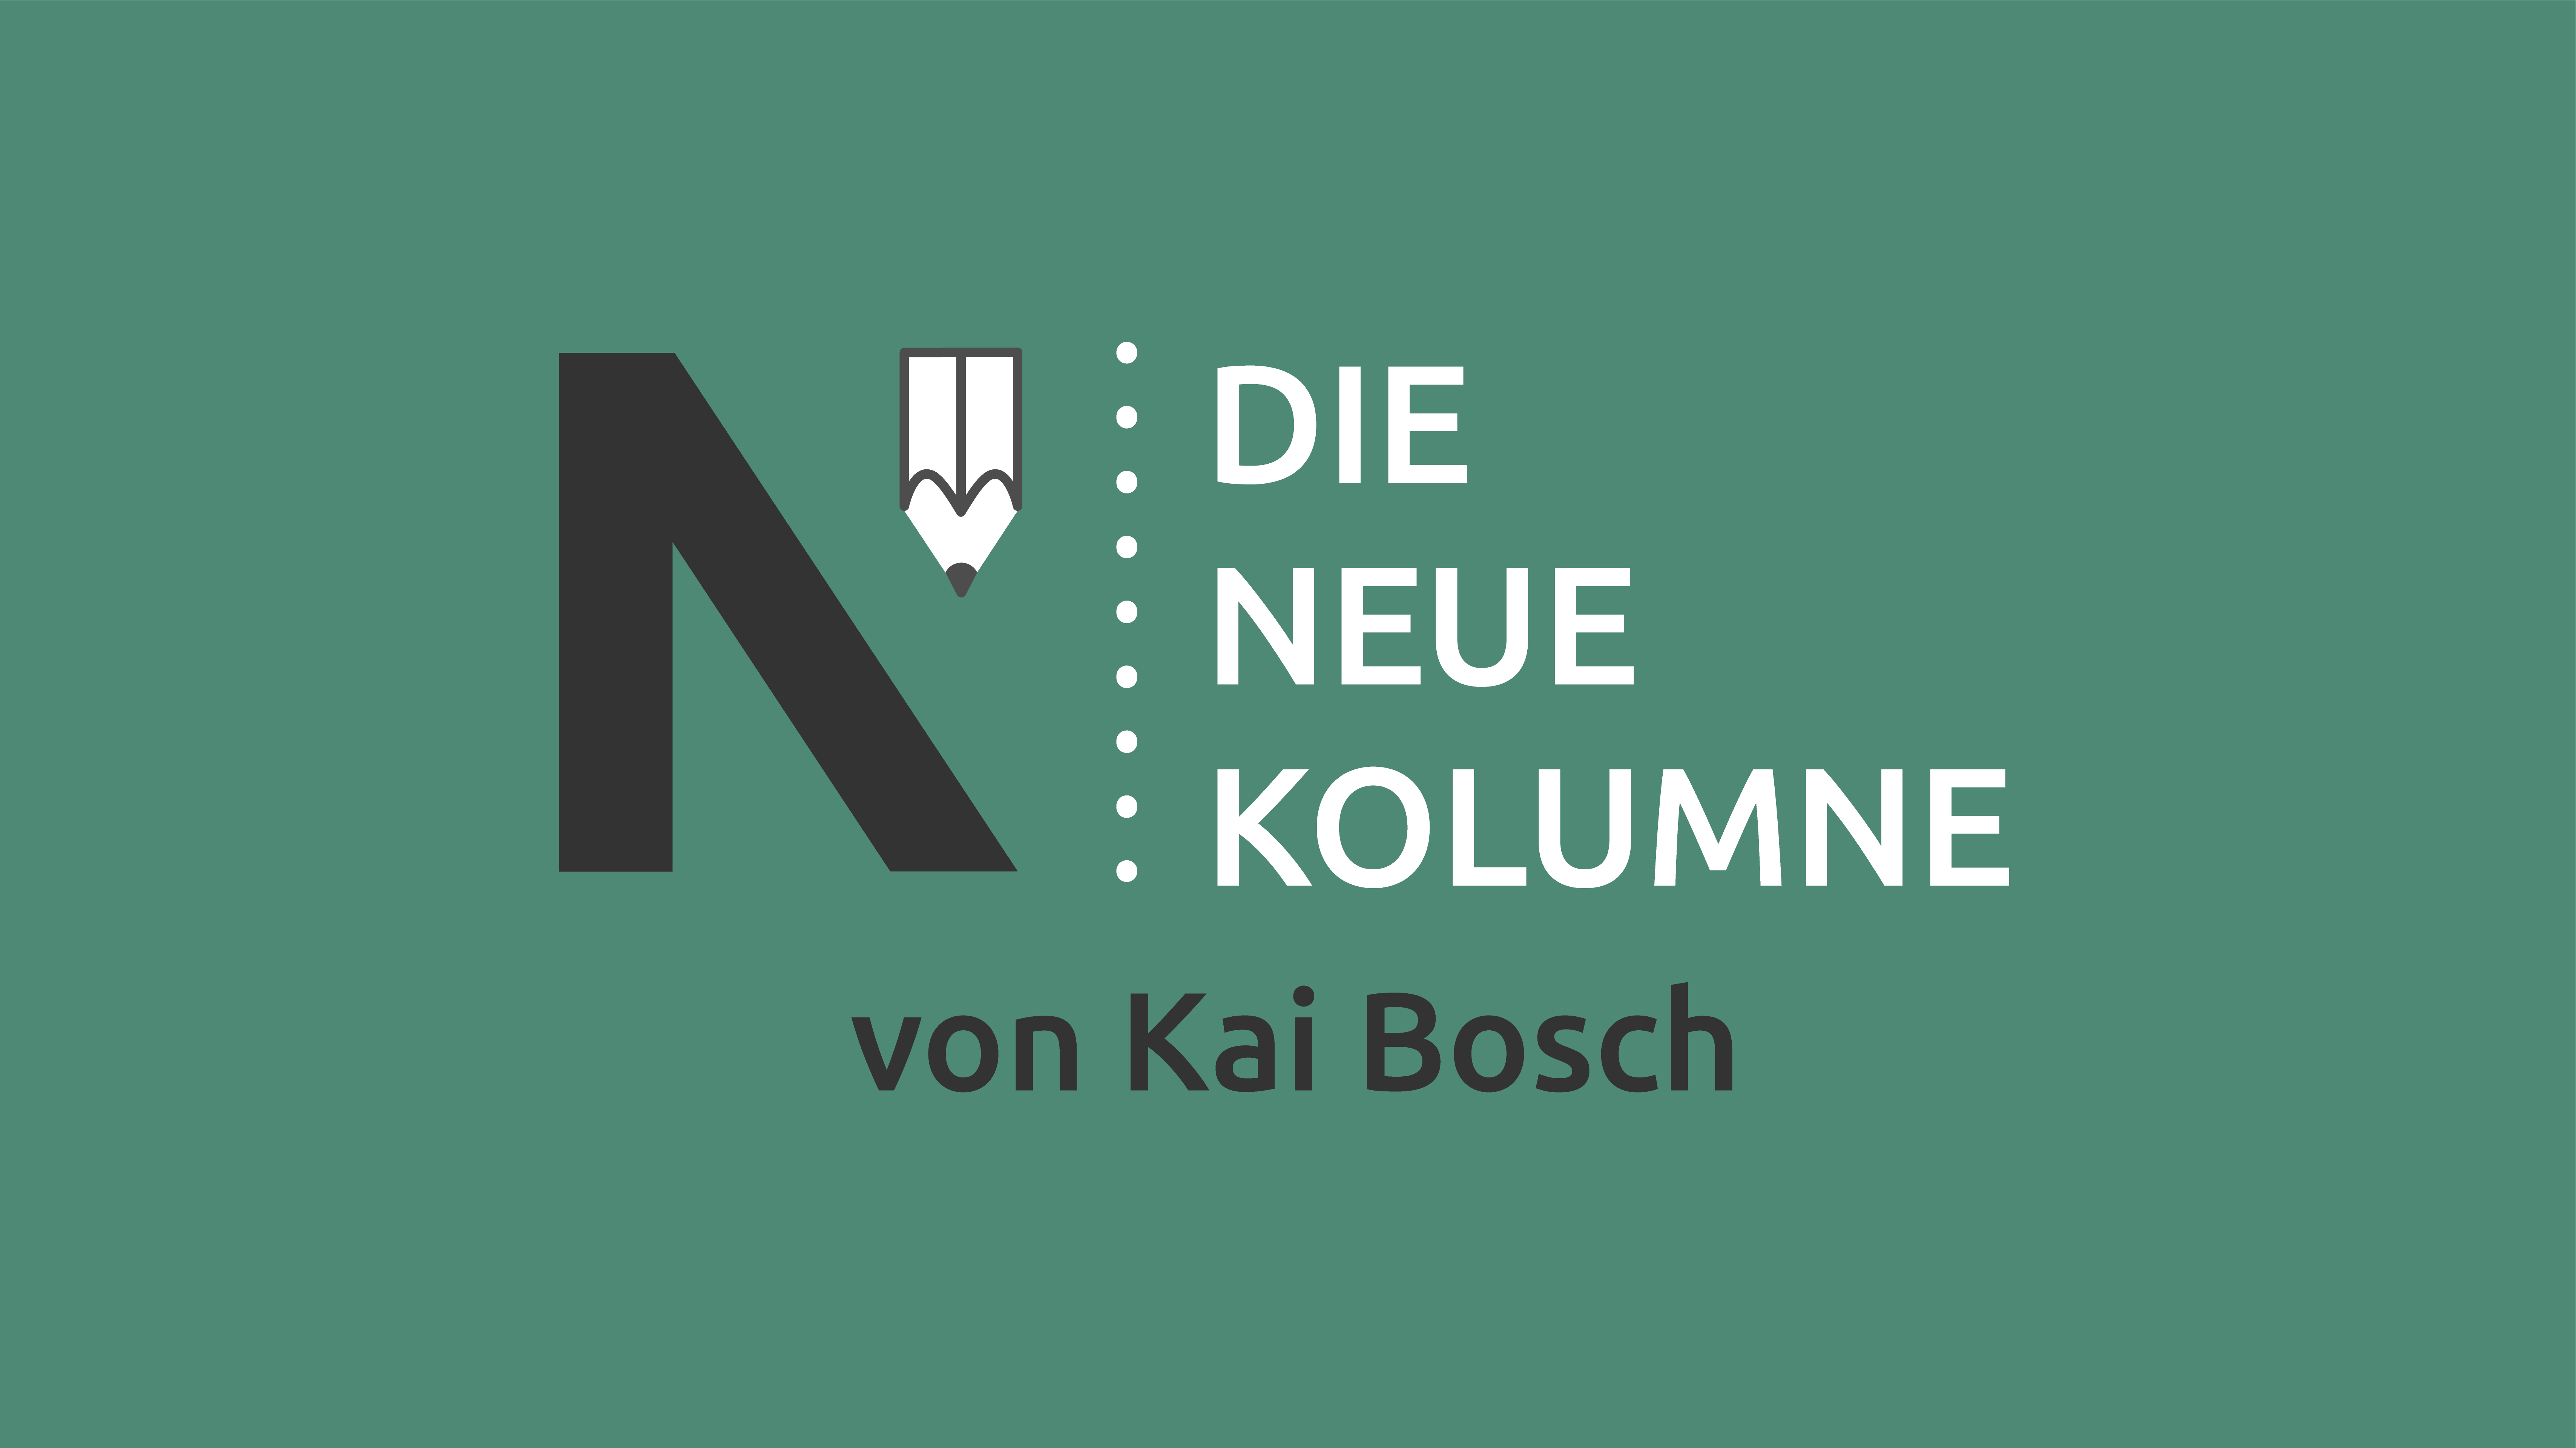 Das Logo von Die Neue Norm auf grünem Grund. Rechts davon steht: Die Neue Kolumne. Unten steht: Von Kai Bosch.